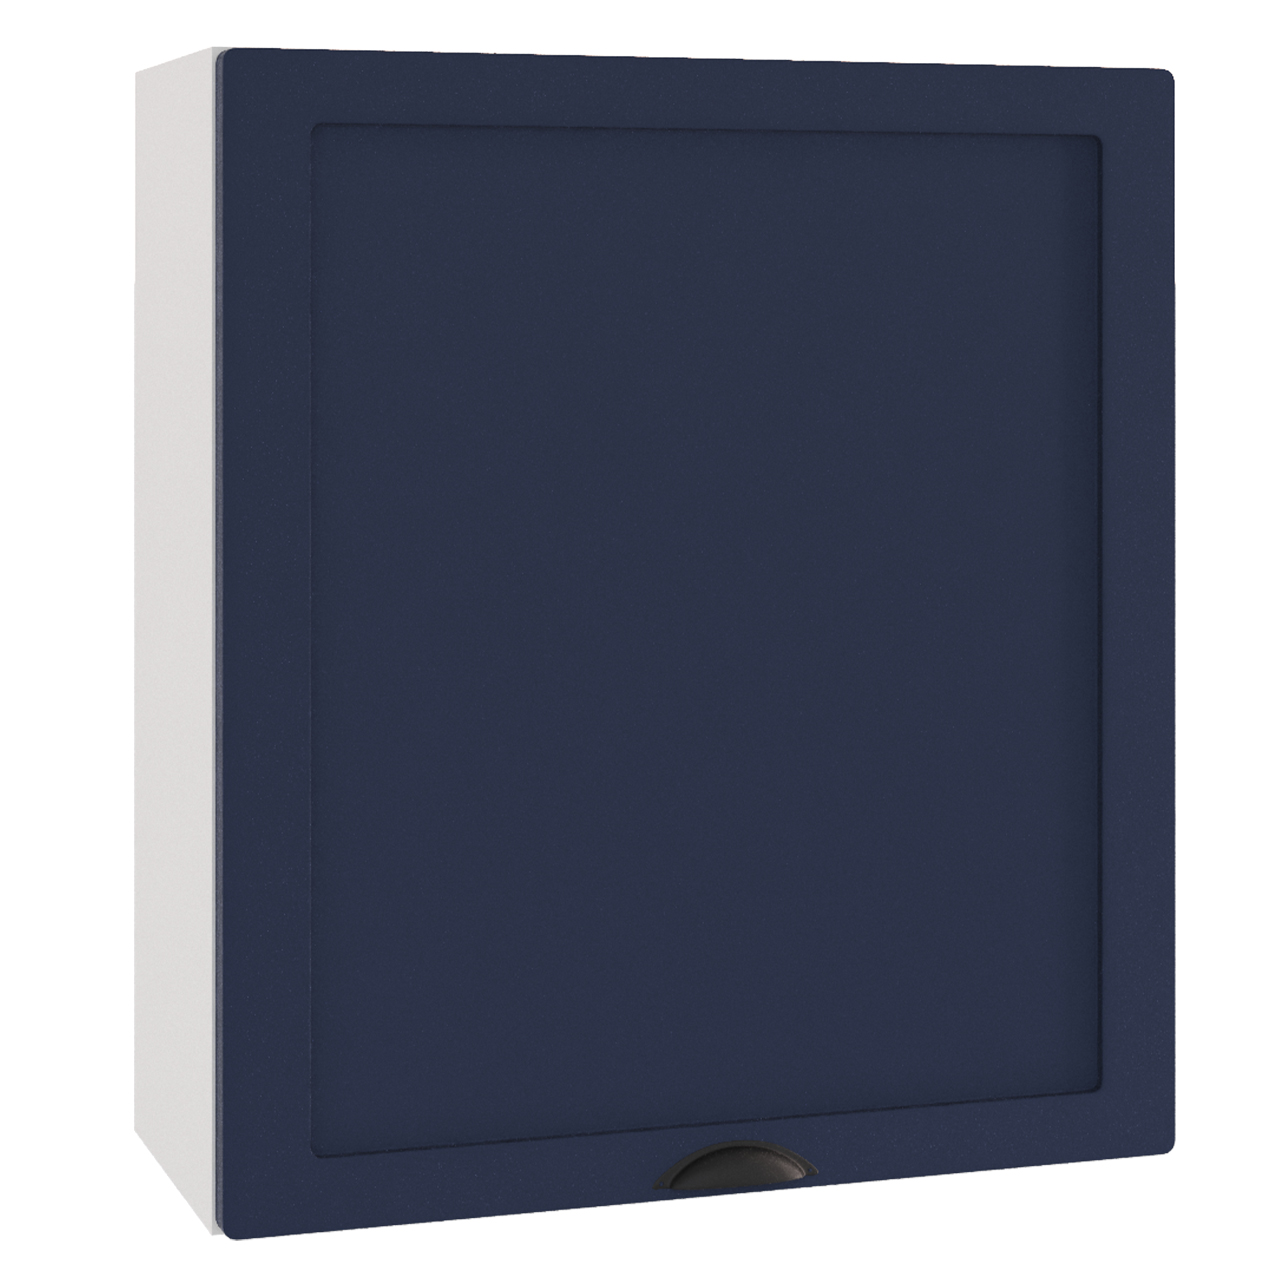 Wall cabinet for built-in range hood ADELE W60/68 SLIM P/L navy blue matt